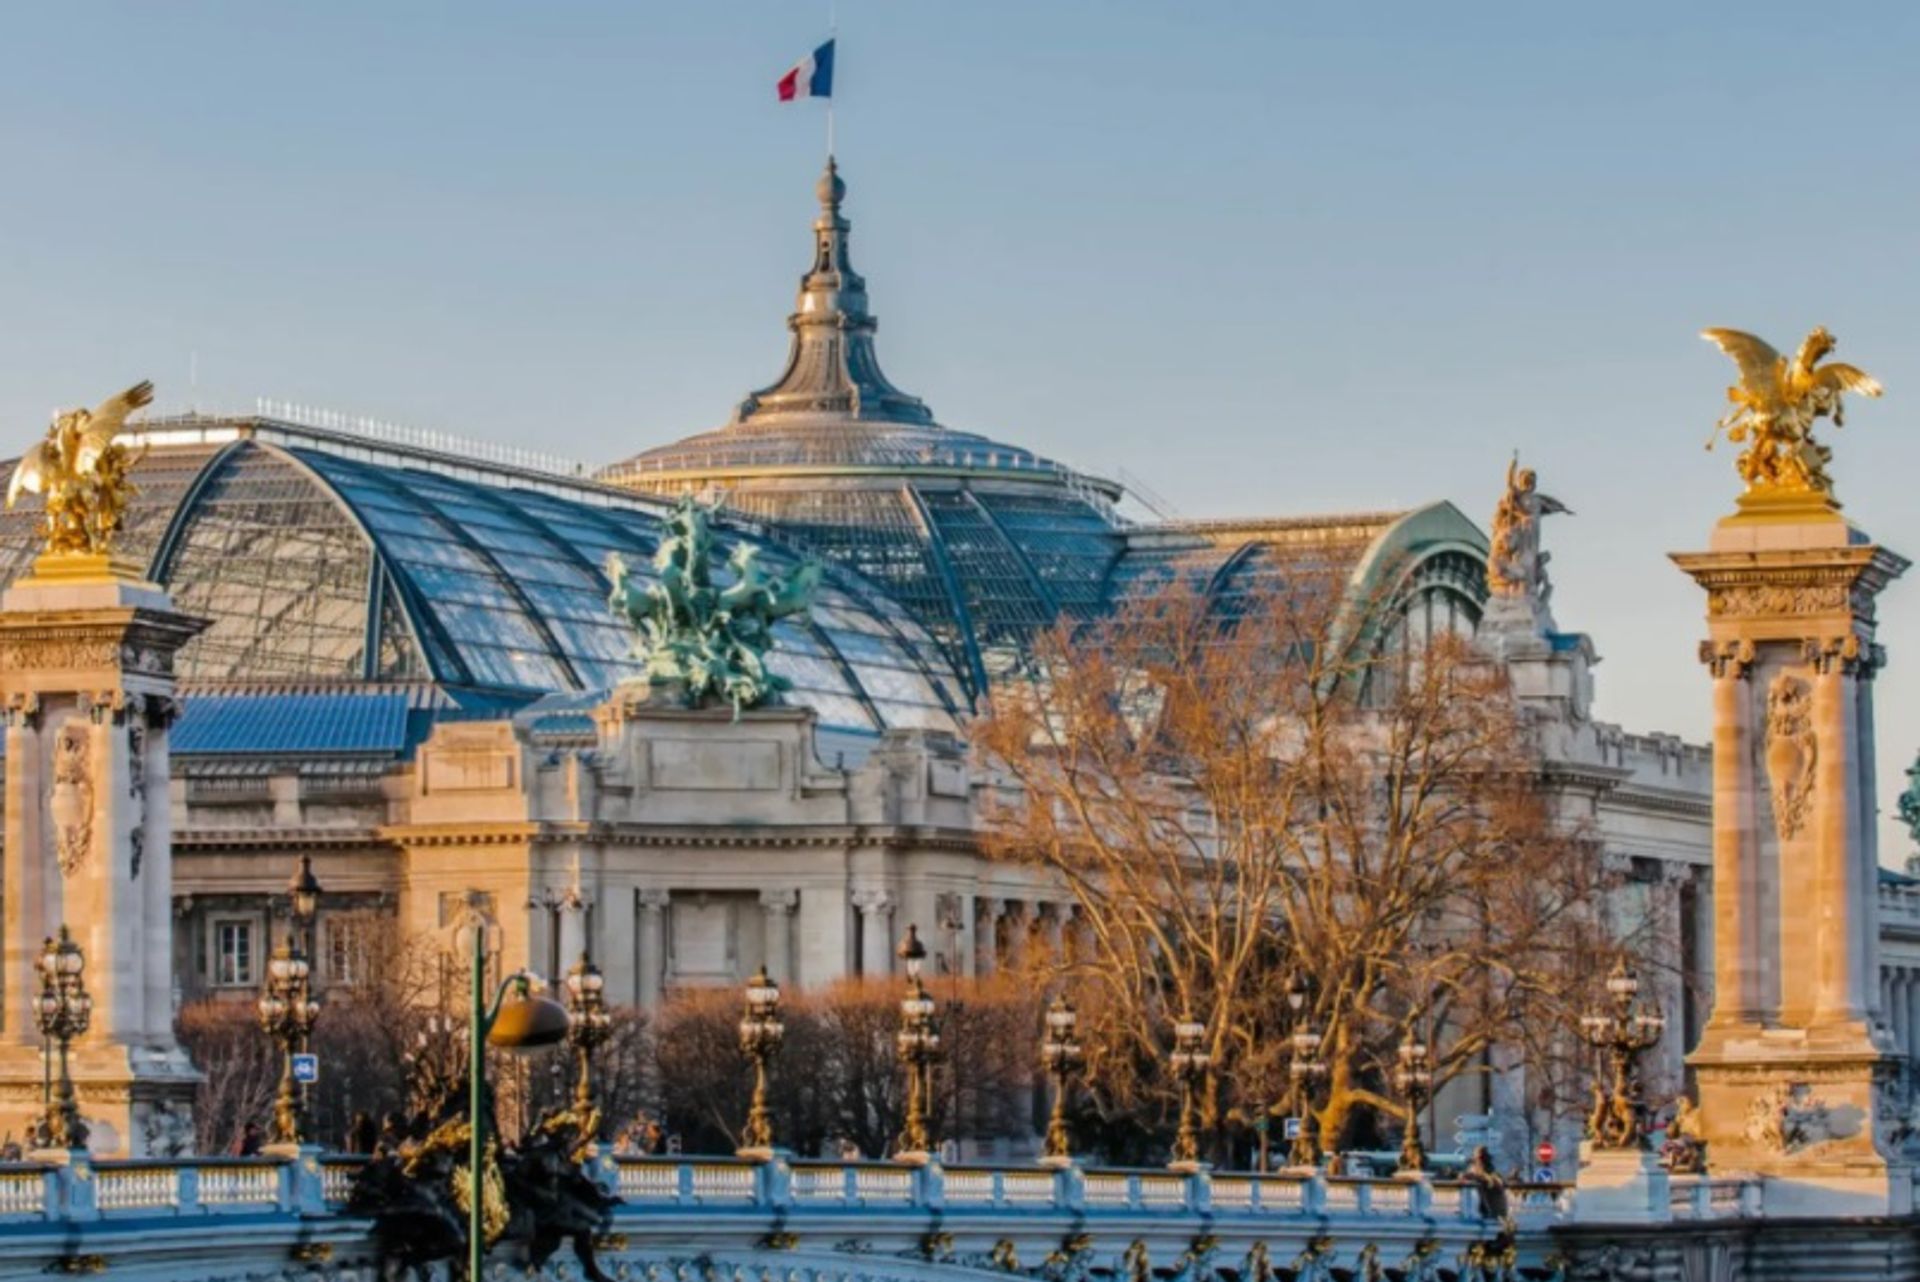 יריד פריז החדש של ארט באזל יעבור לגראנד פאלה משנת 2024, לאחר השיפוצים.

צילום: Shutterstock